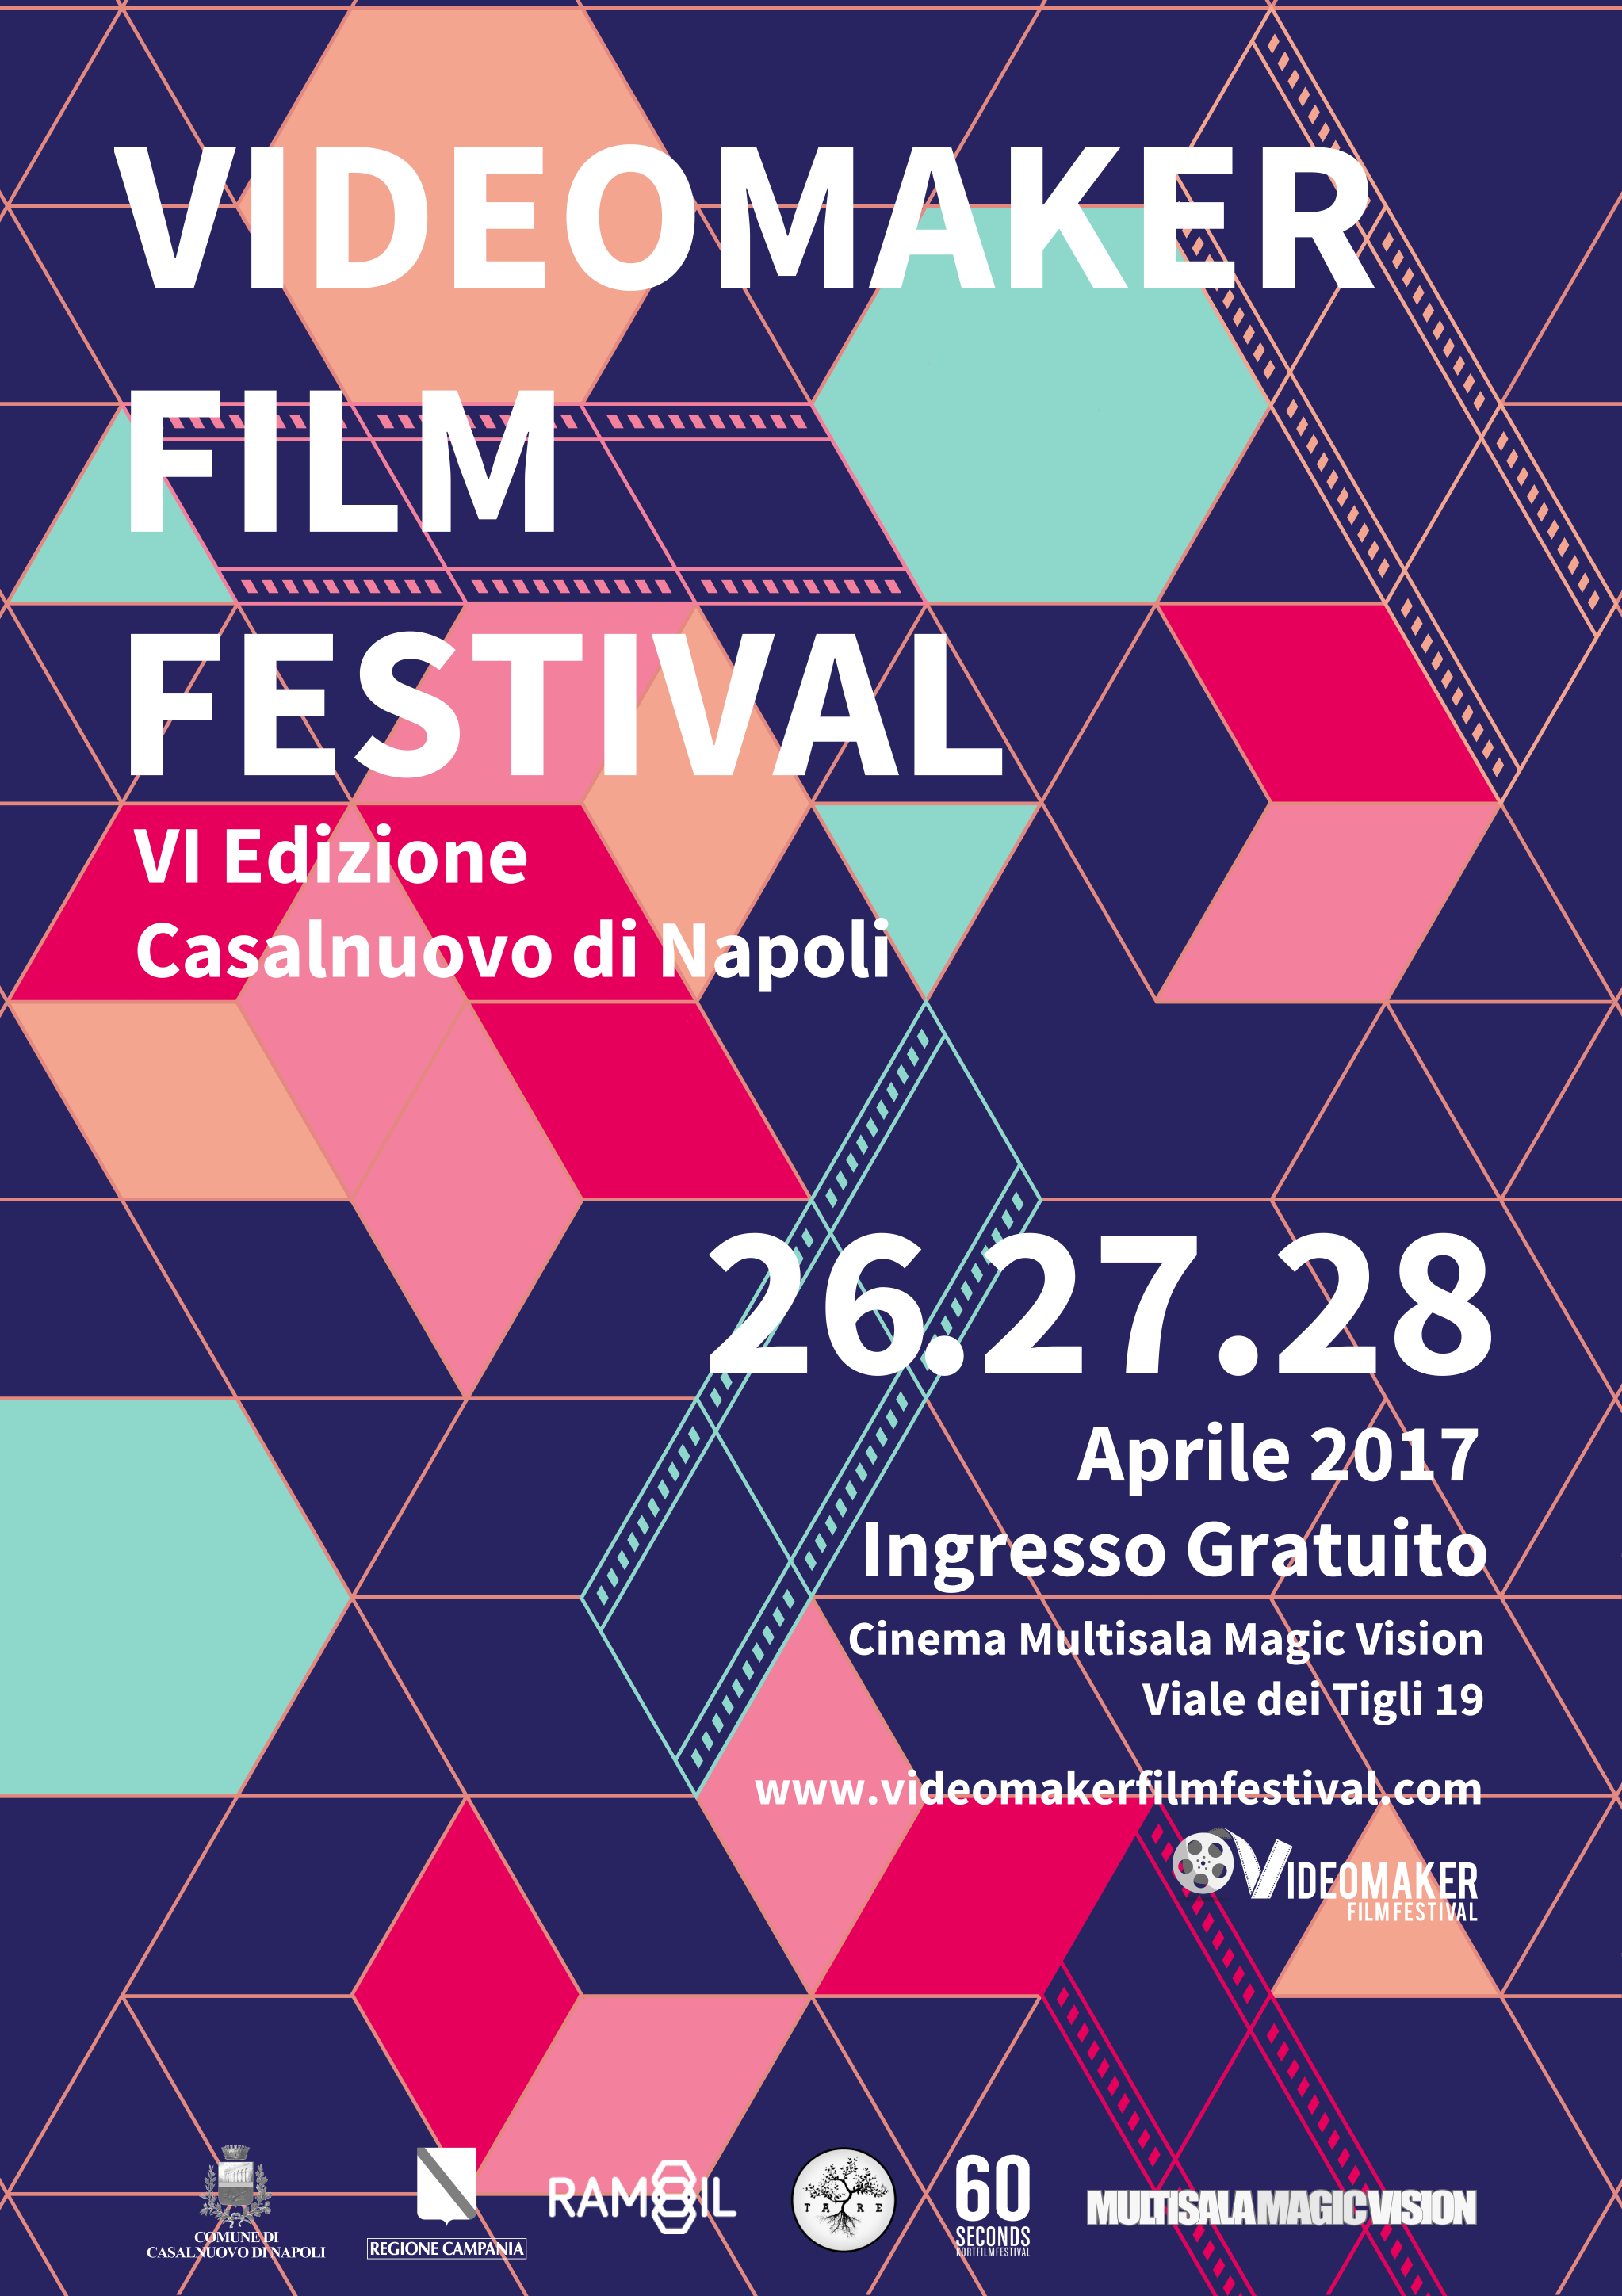  VI edizione del VideoMaker Film Festival a Casalnuovo di Napoli